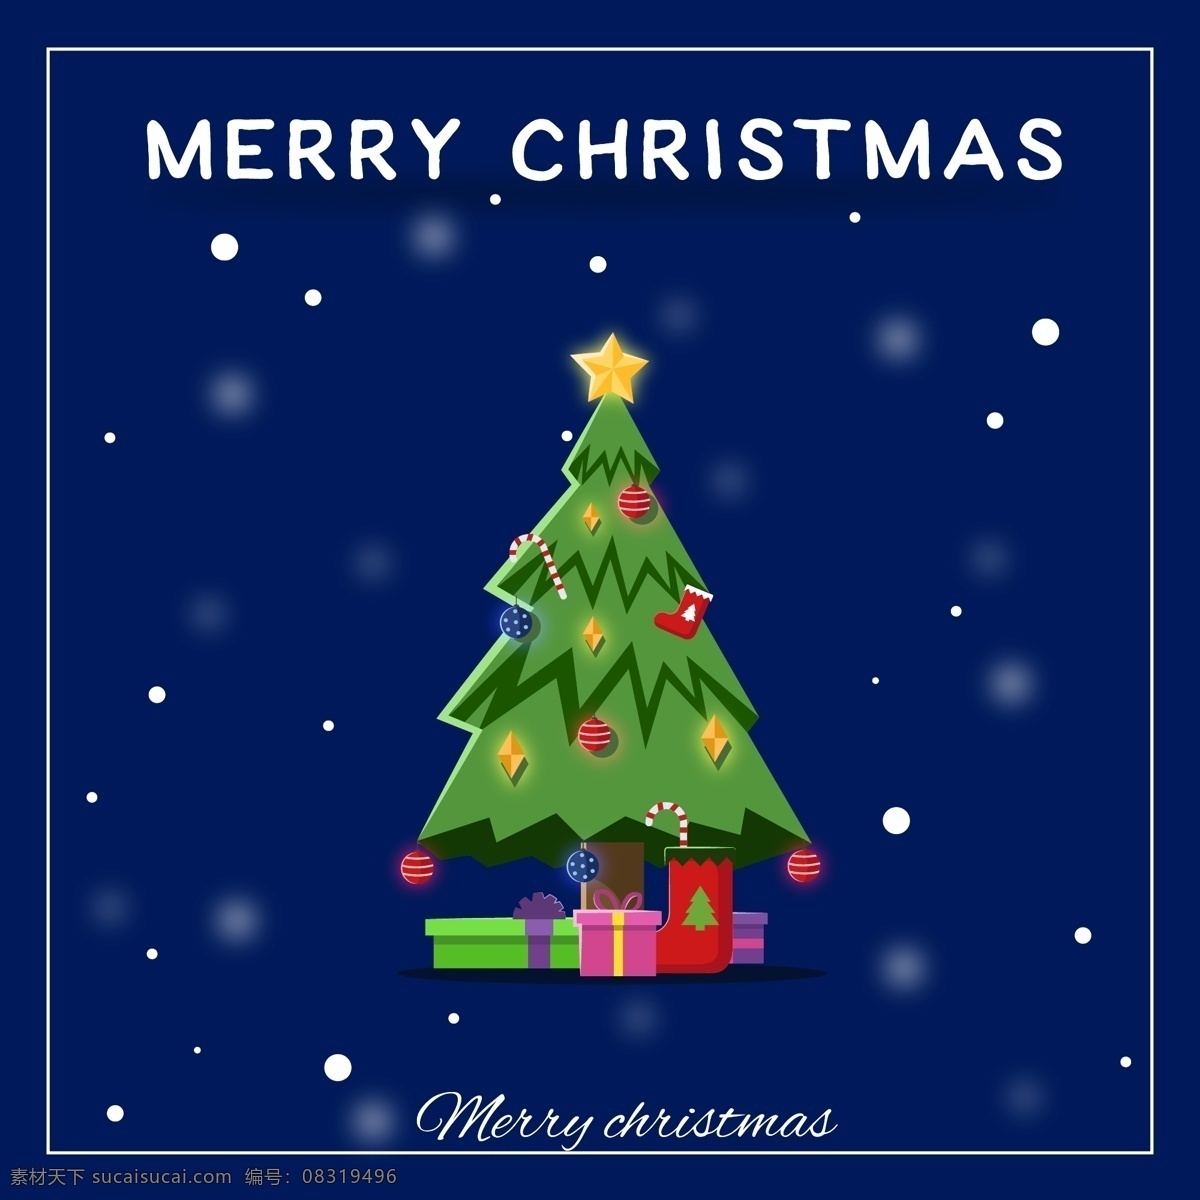 雪花 下雪 圣诞节 圣诞树 礼物 卡片 背景 海报 圣诞快乐 圣诞素材 merry christmas